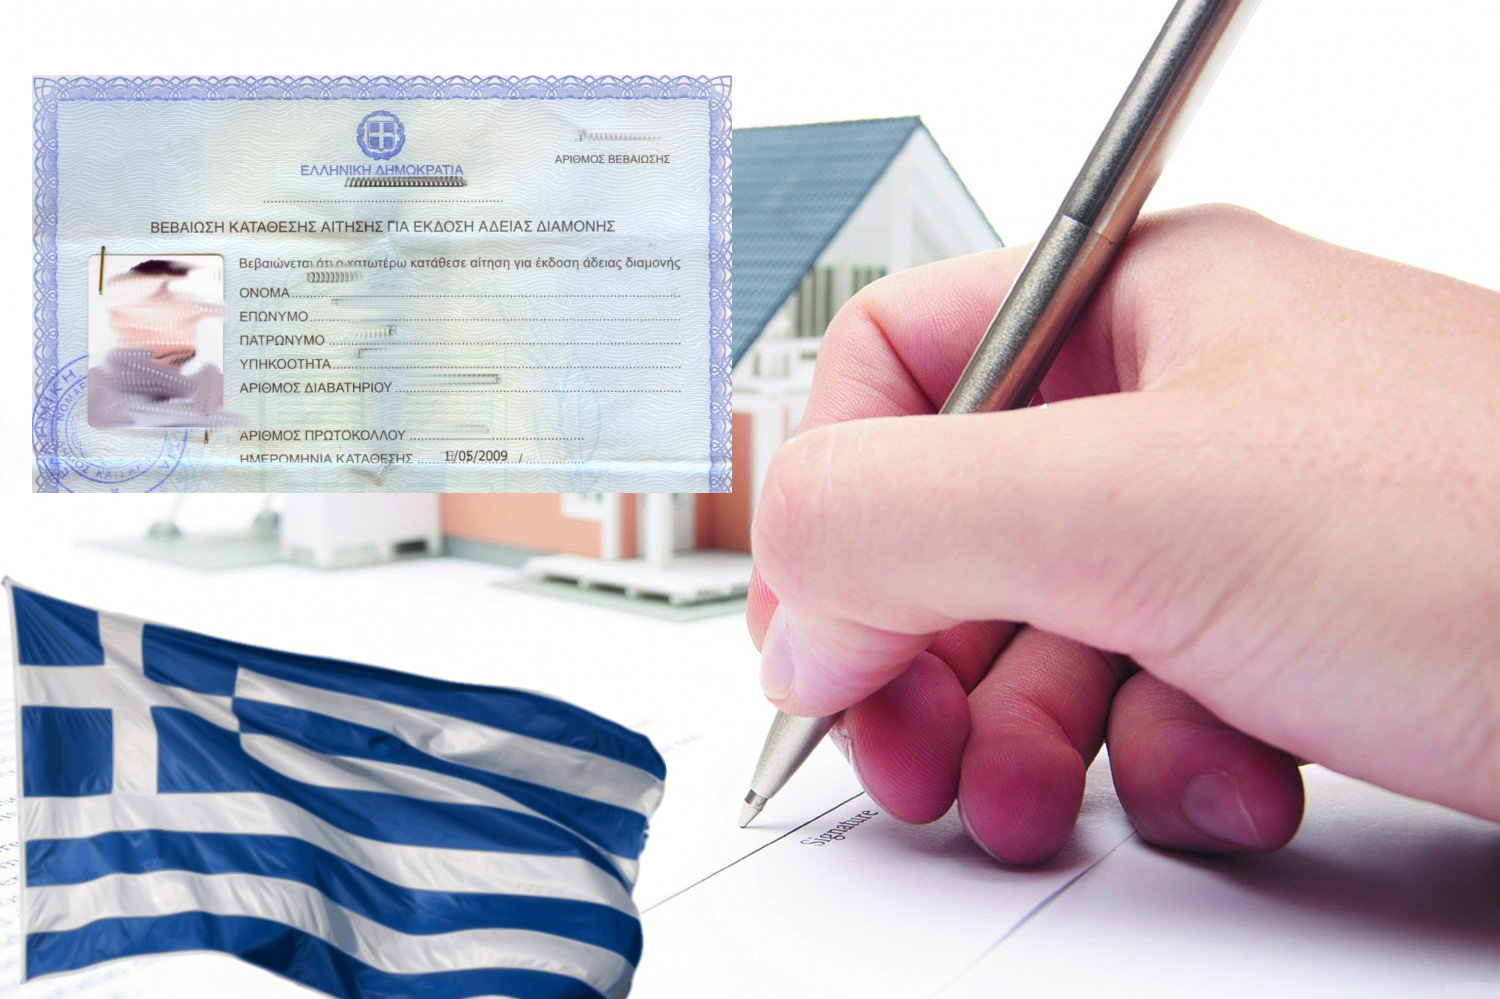 Вид на жительство в греции: способы эмиграции и пакет документов
вид на жительство в греции: способы эмиграции и пакет документов